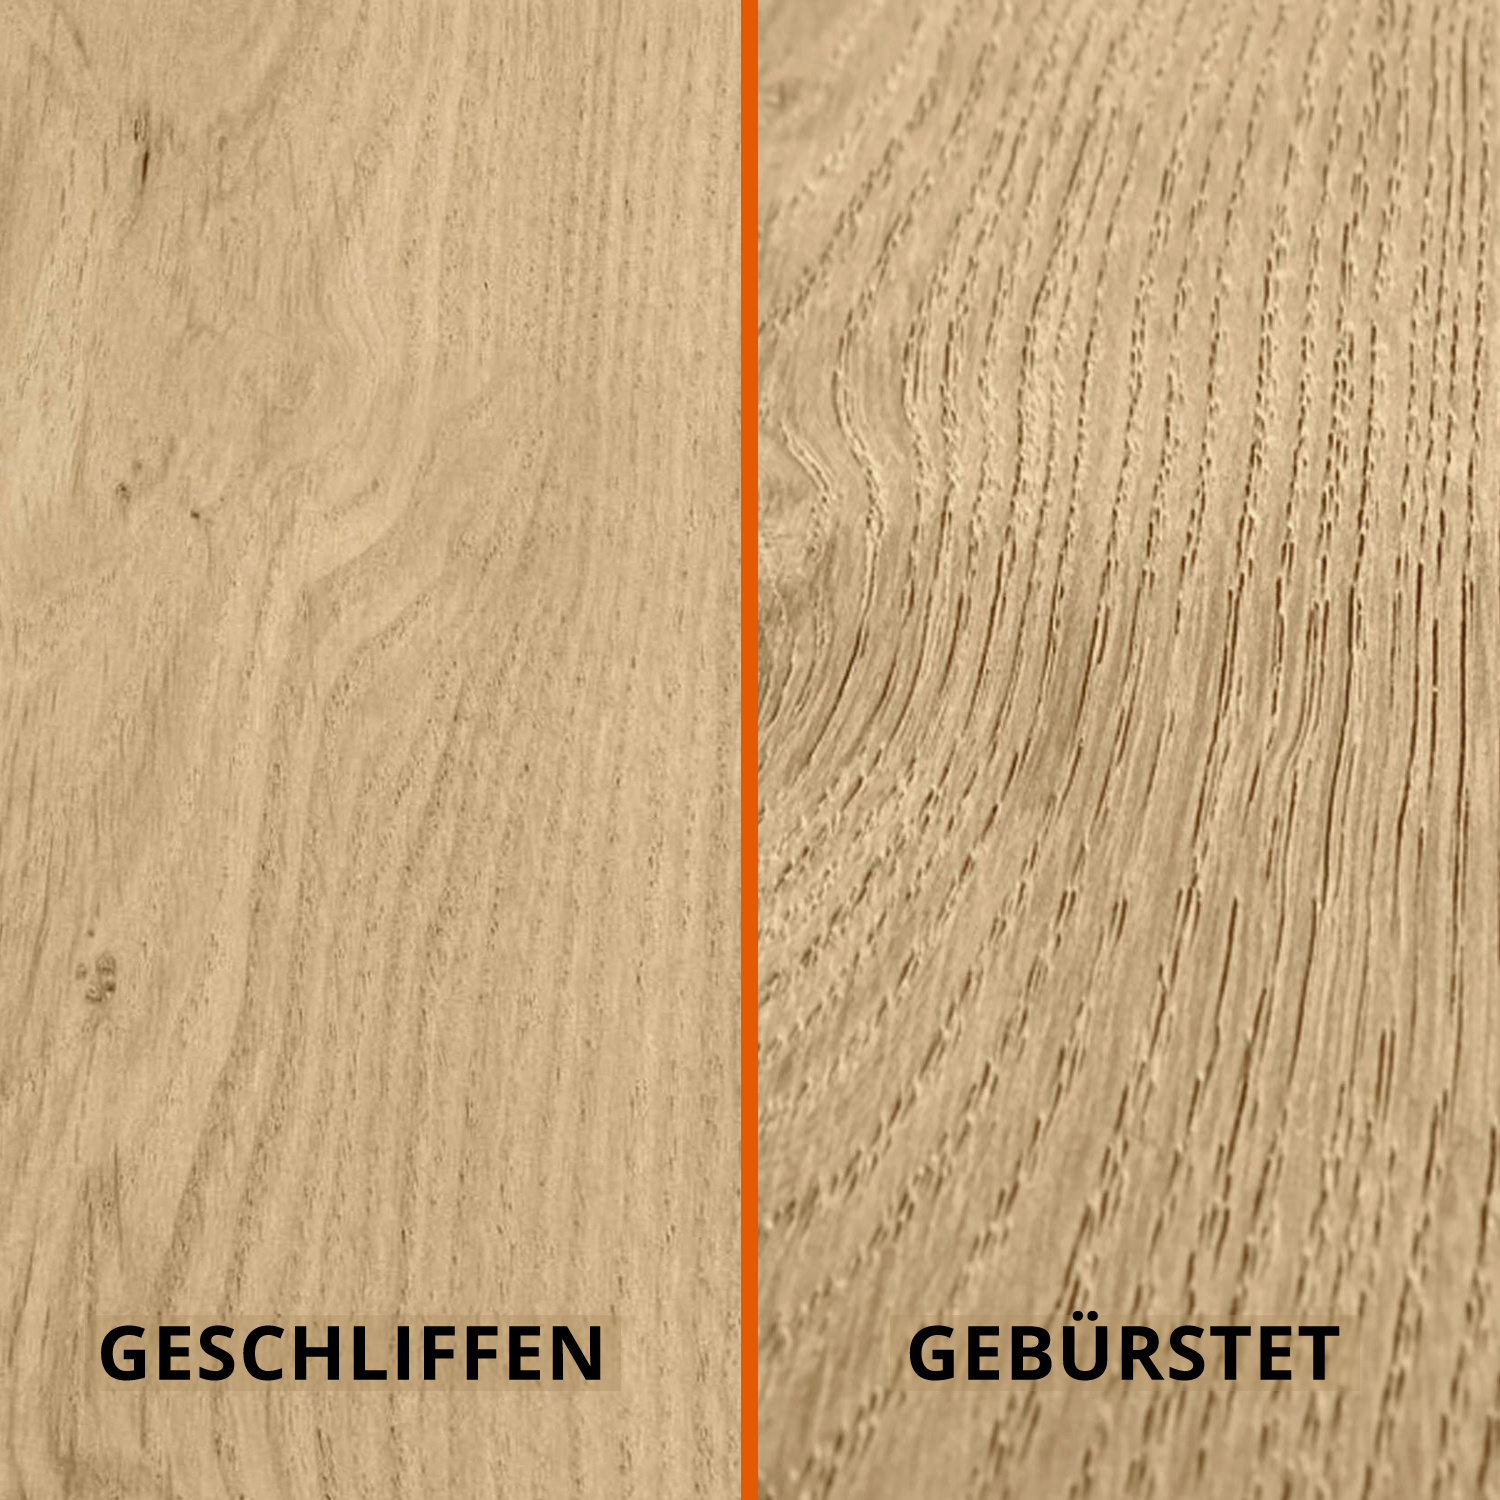  Tischplatte Eiche rund nach Maß - 2 cm dick - Eichenholz rustikal - Durchmesser: 30 - 180 cm - Eiche Tischplatte rund massiv - verleimt & künstlich getrocknet (HF 8-12%)